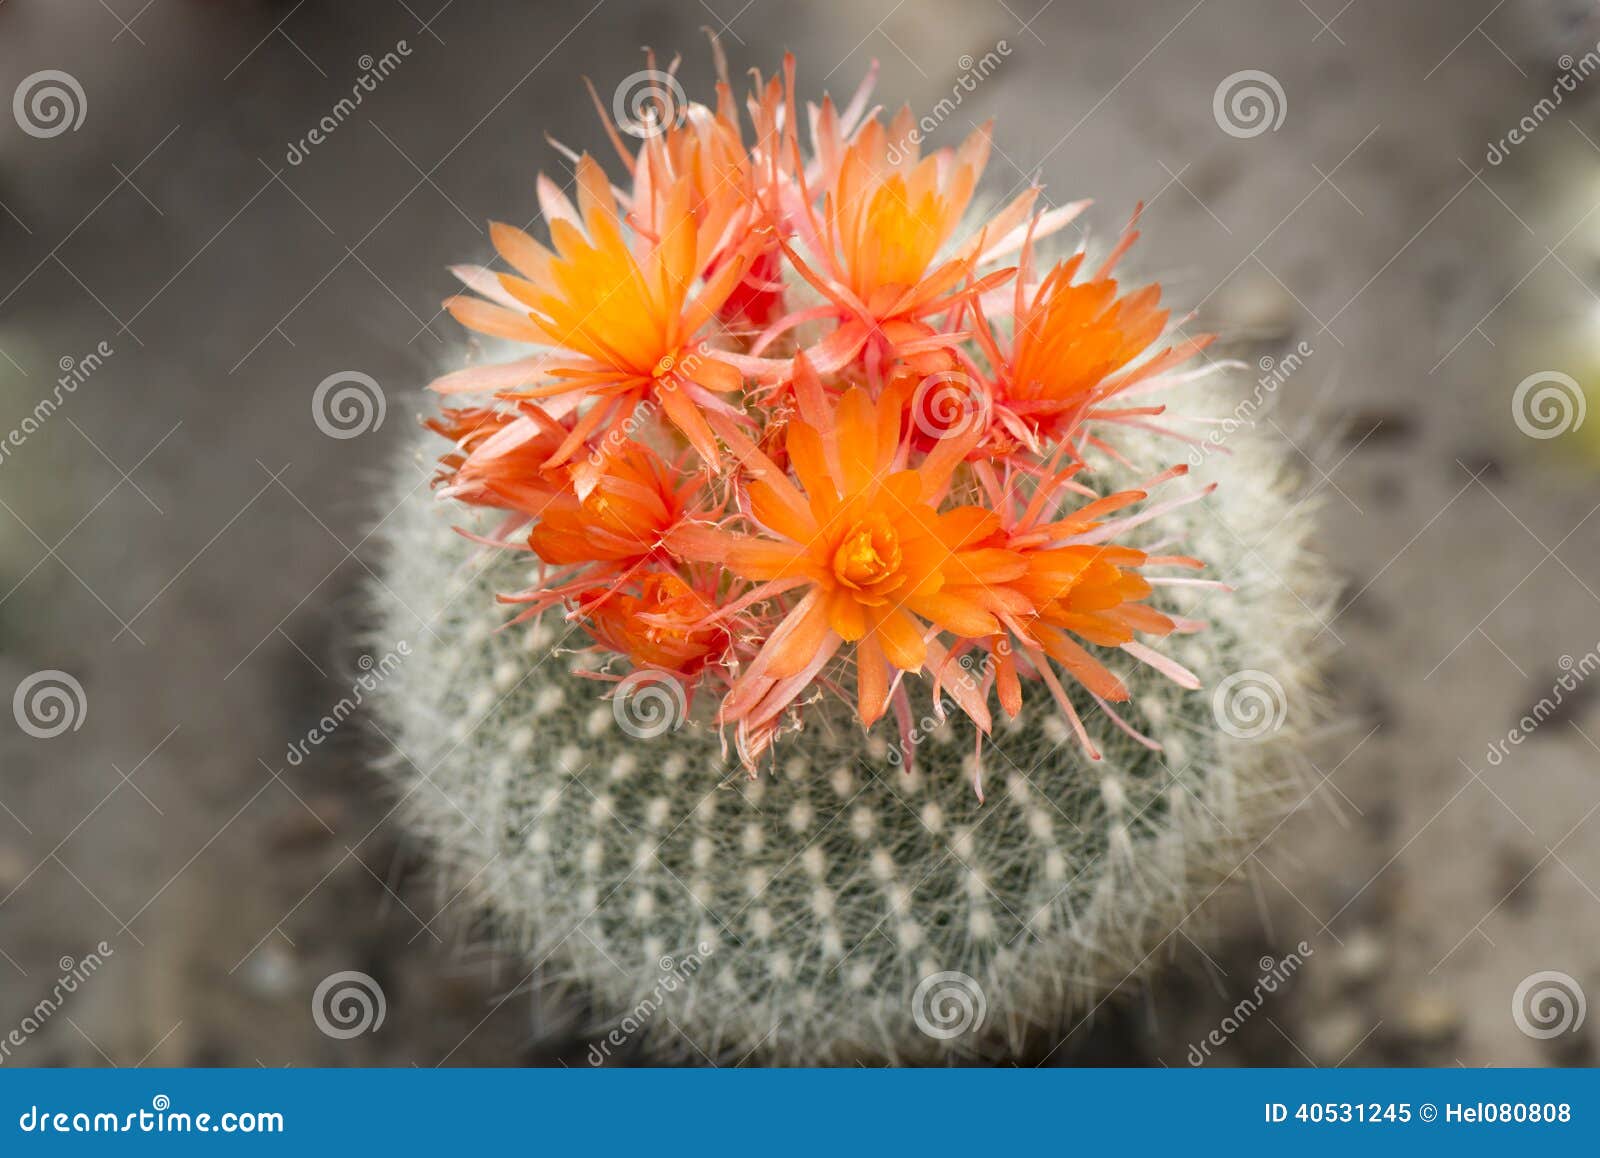 Flores da laranja do cacto imagem de stock. Imagem de verde - 40531245